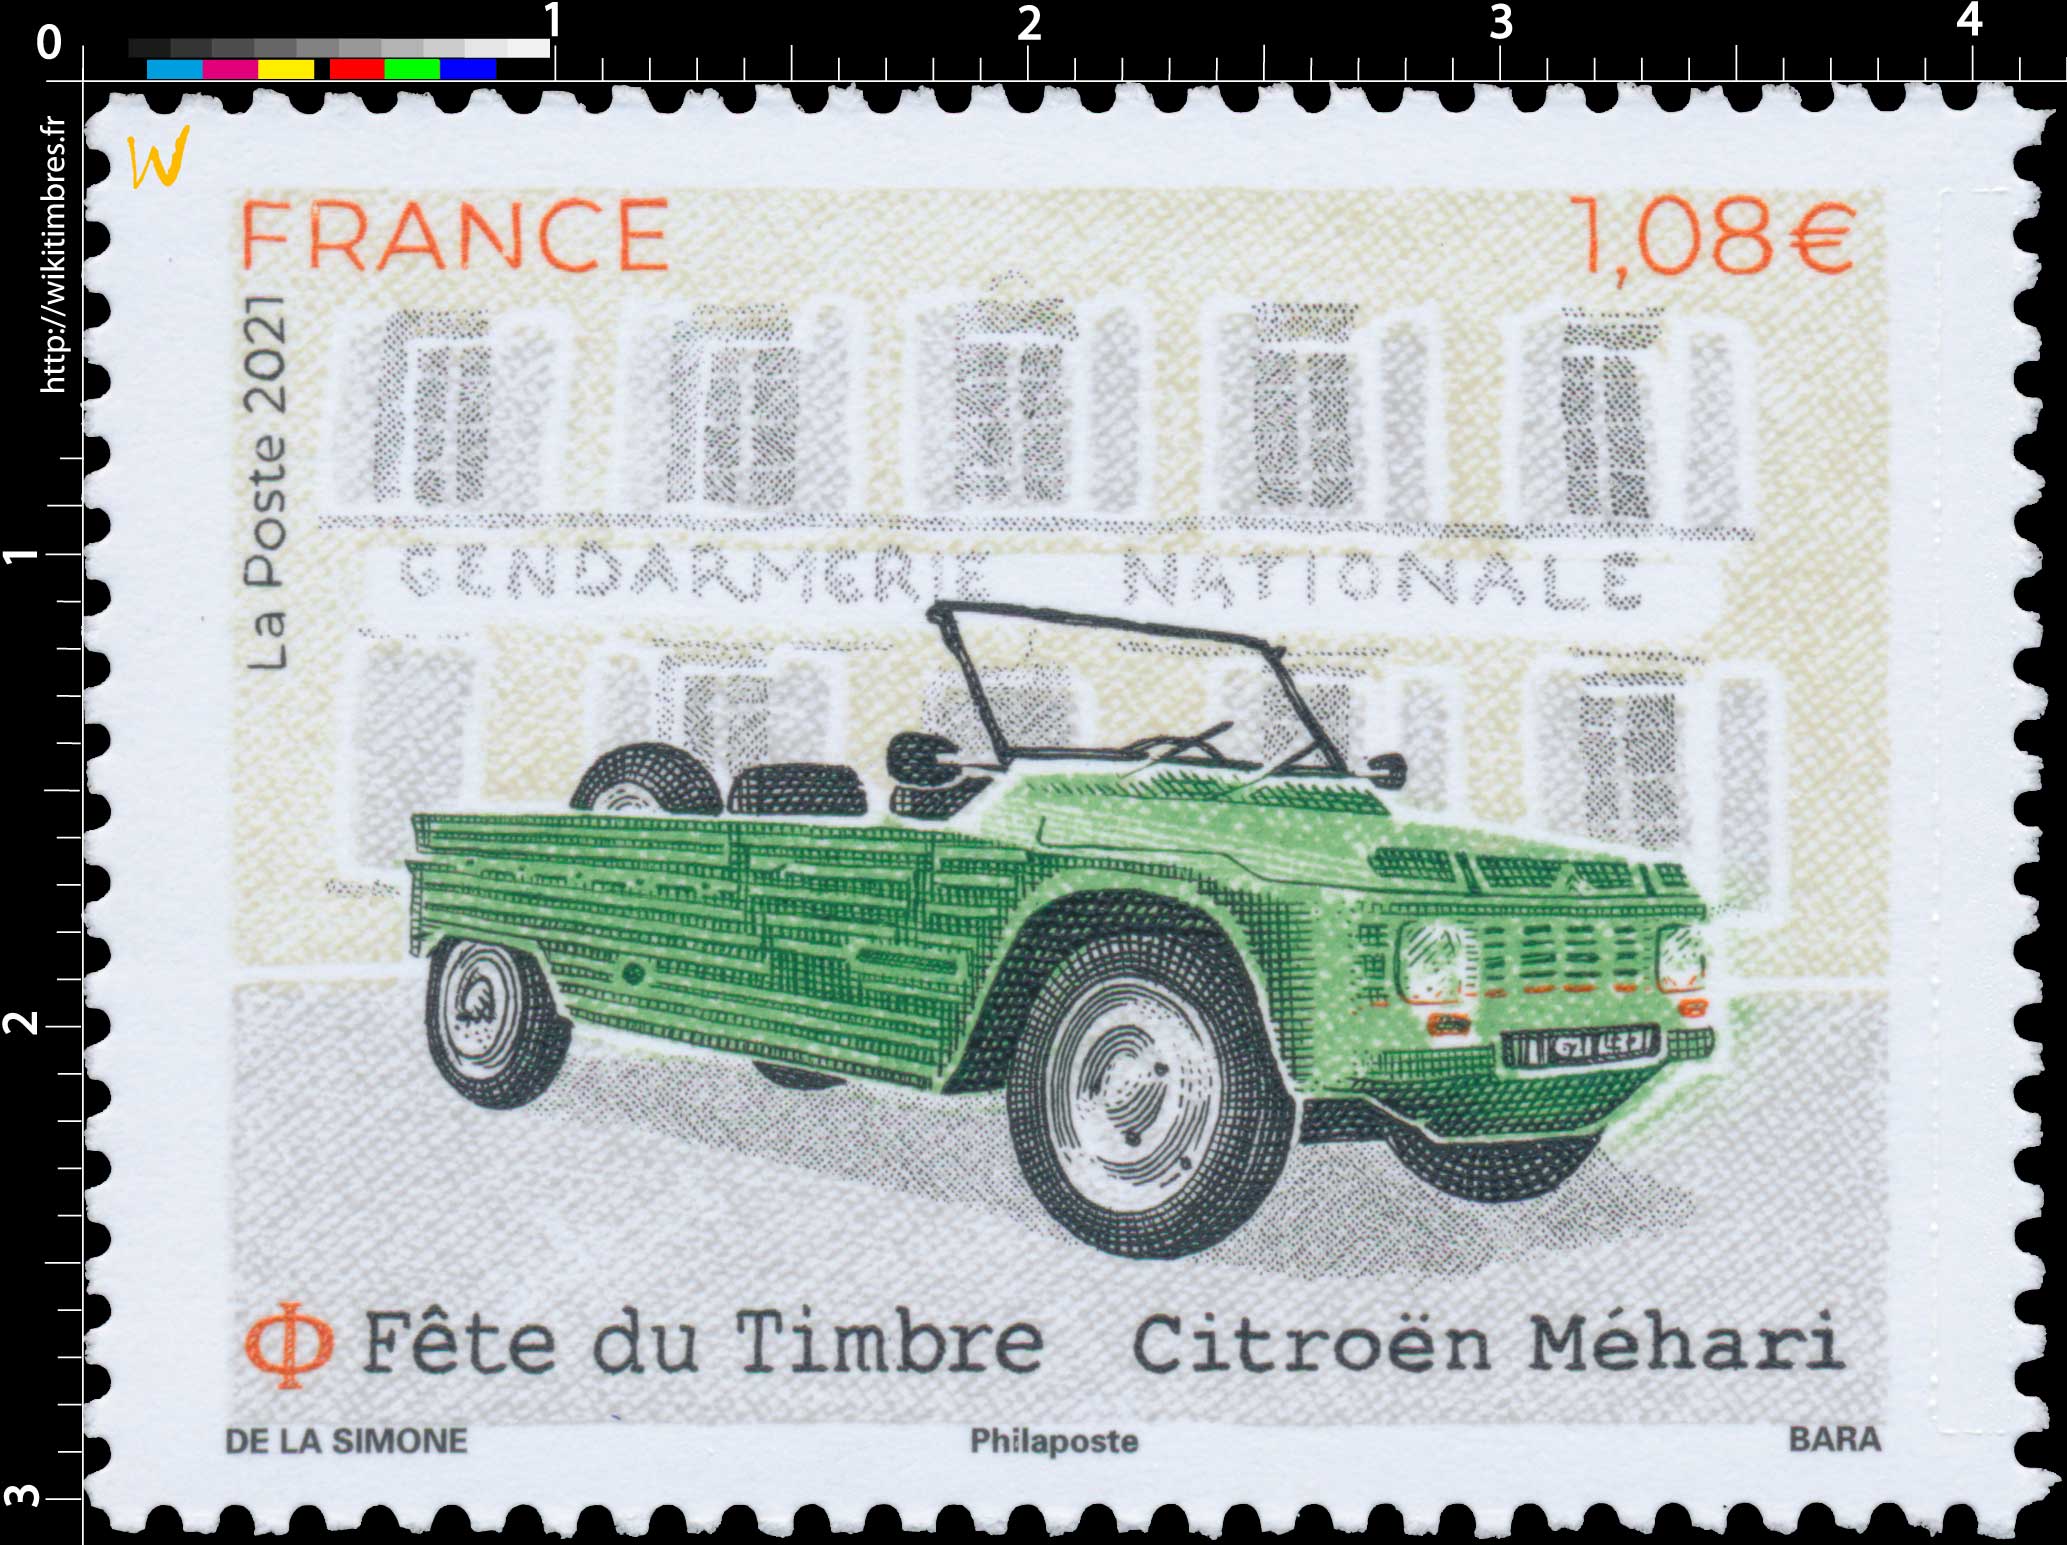 2021 Fête du timbre - Citroën Méhari